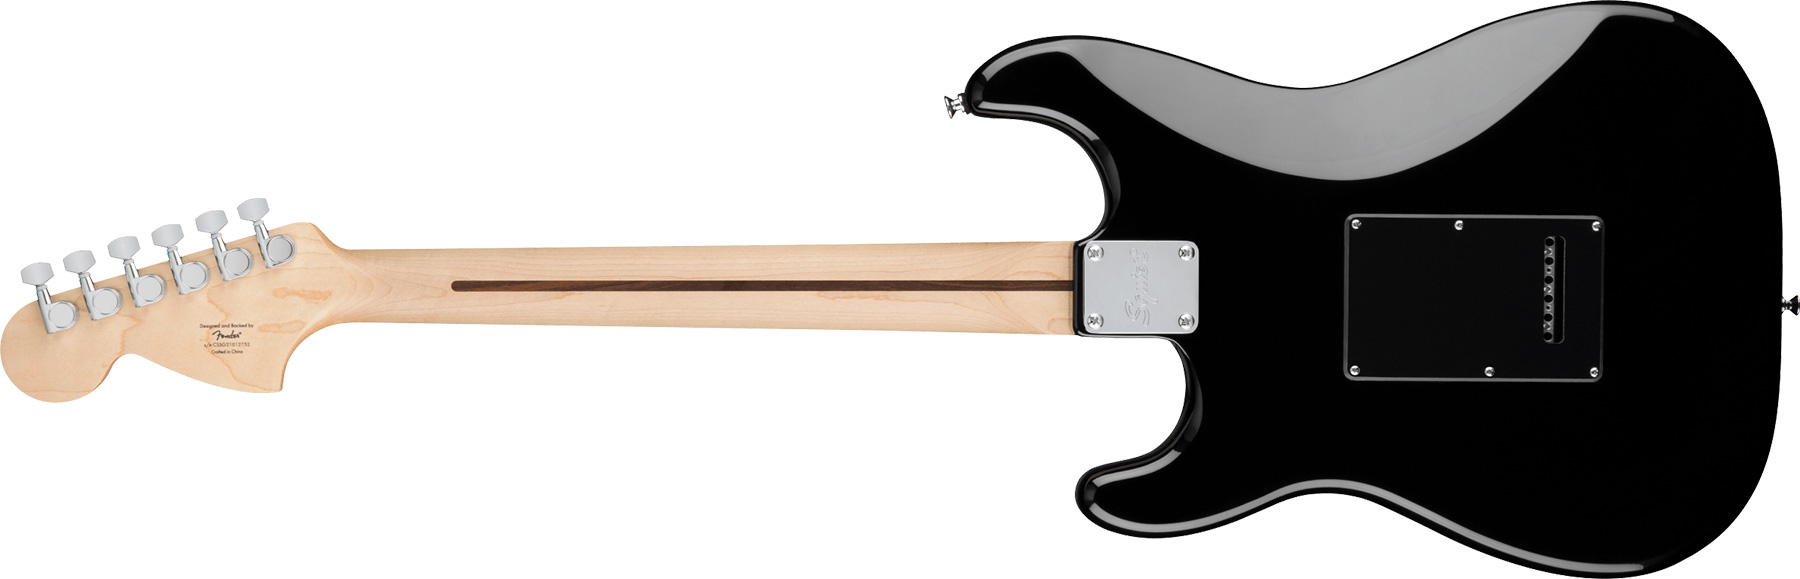 Squier Strat Affinity Black Pickguard Fsr Ltd Hss Trem Lau - Black - Str shape electric guitar - Variation 1